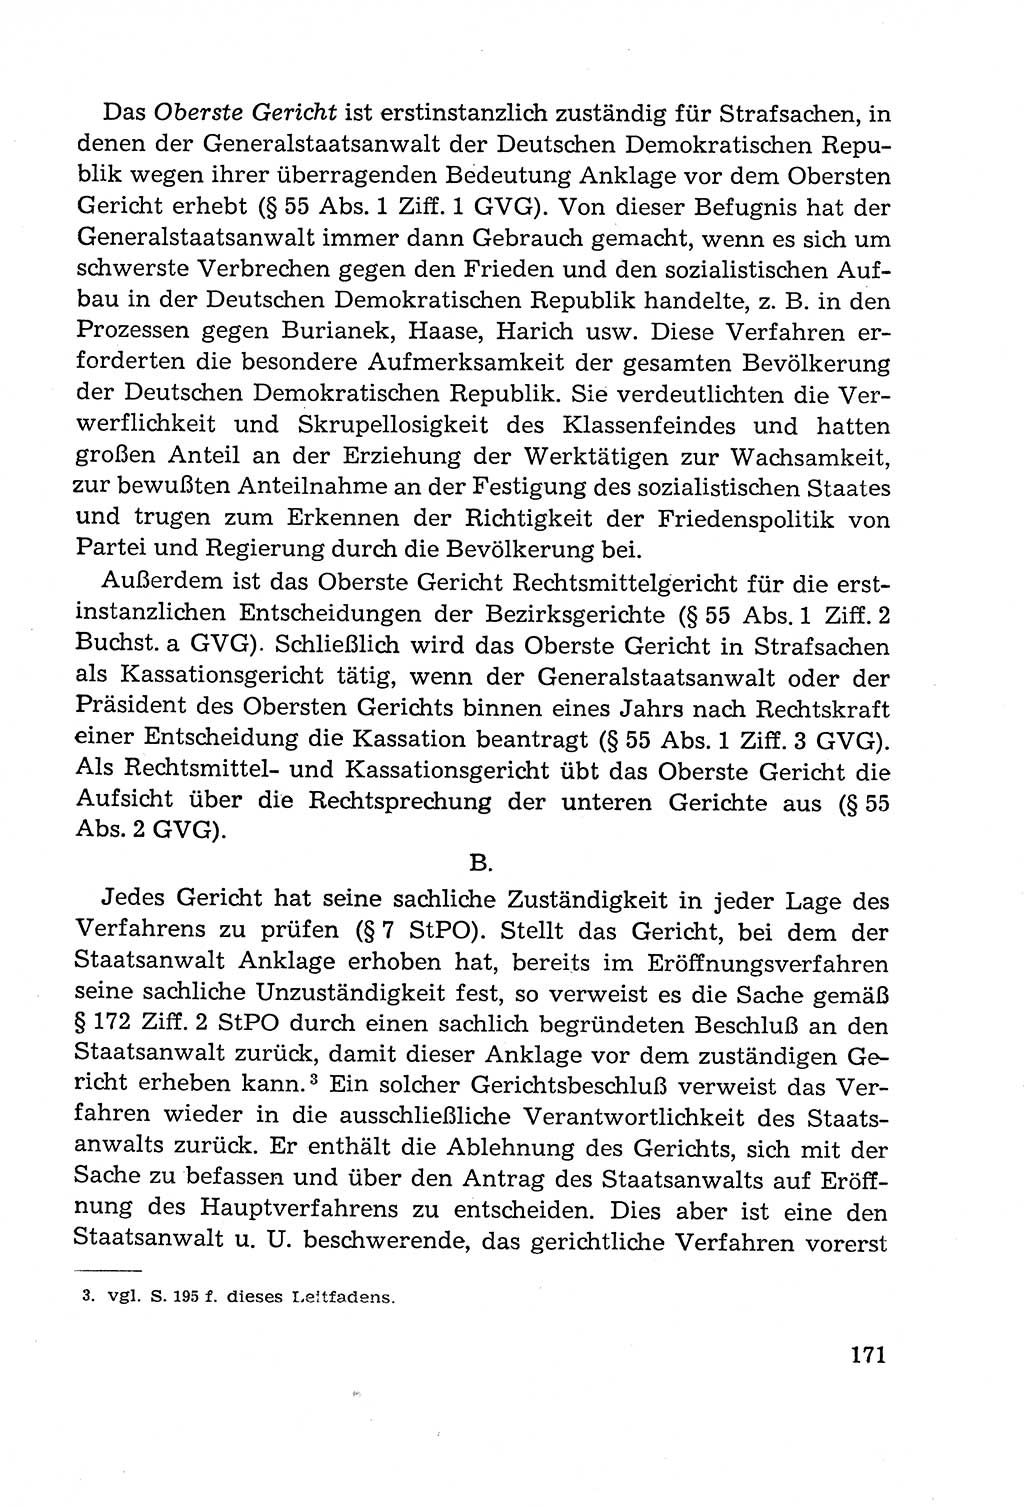 Leitfaden des Strafprozeßrechts der Deutschen Demokratischen Republik (DDR) 1959, Seite 171 (LF StPR DDR 1959, S. 171)